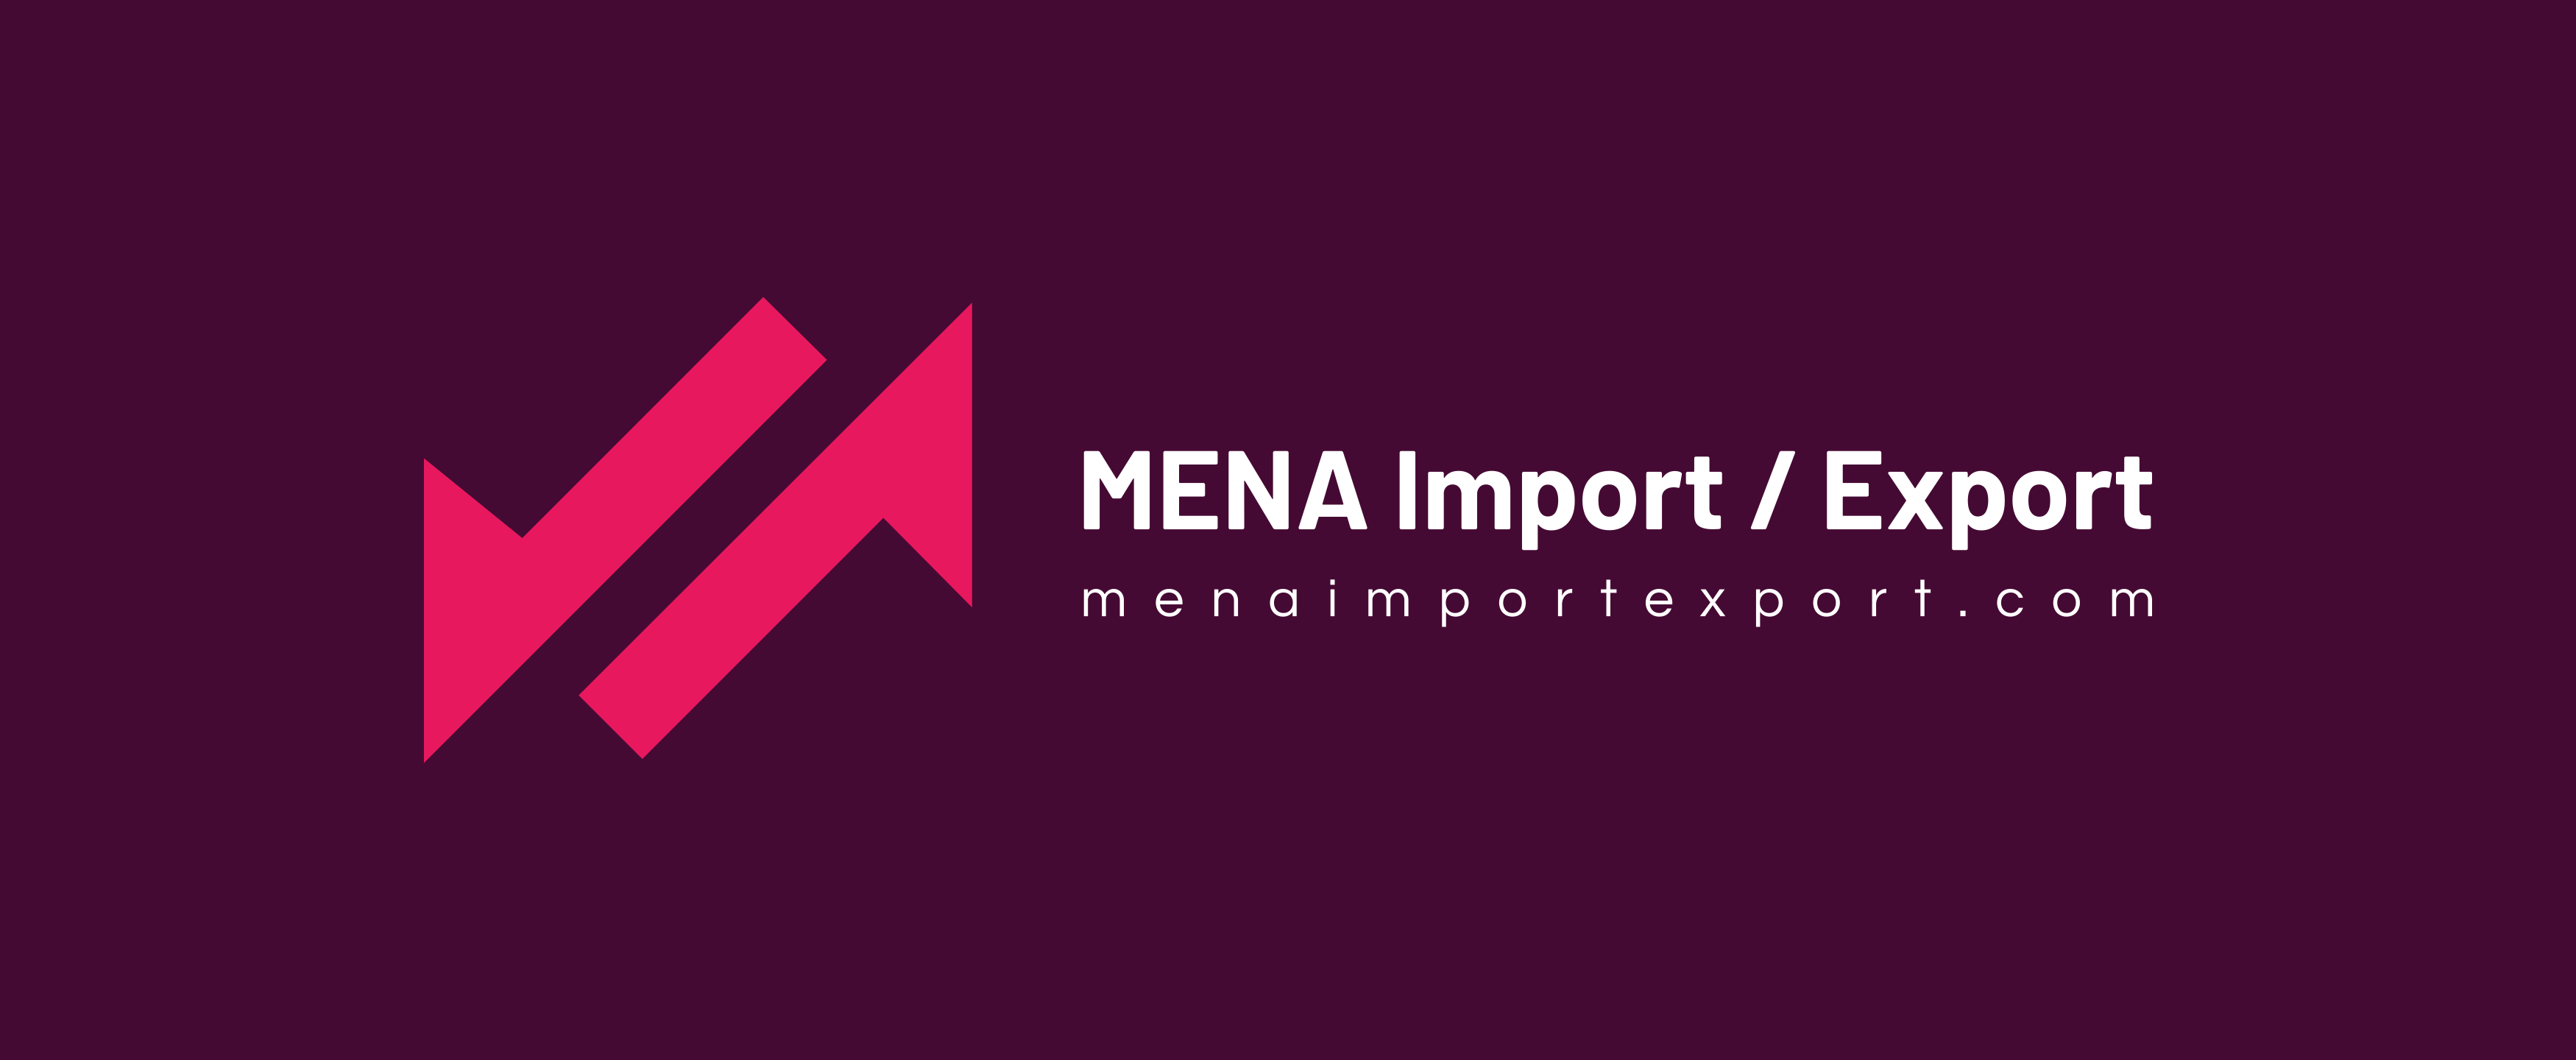 MENA Import / Export